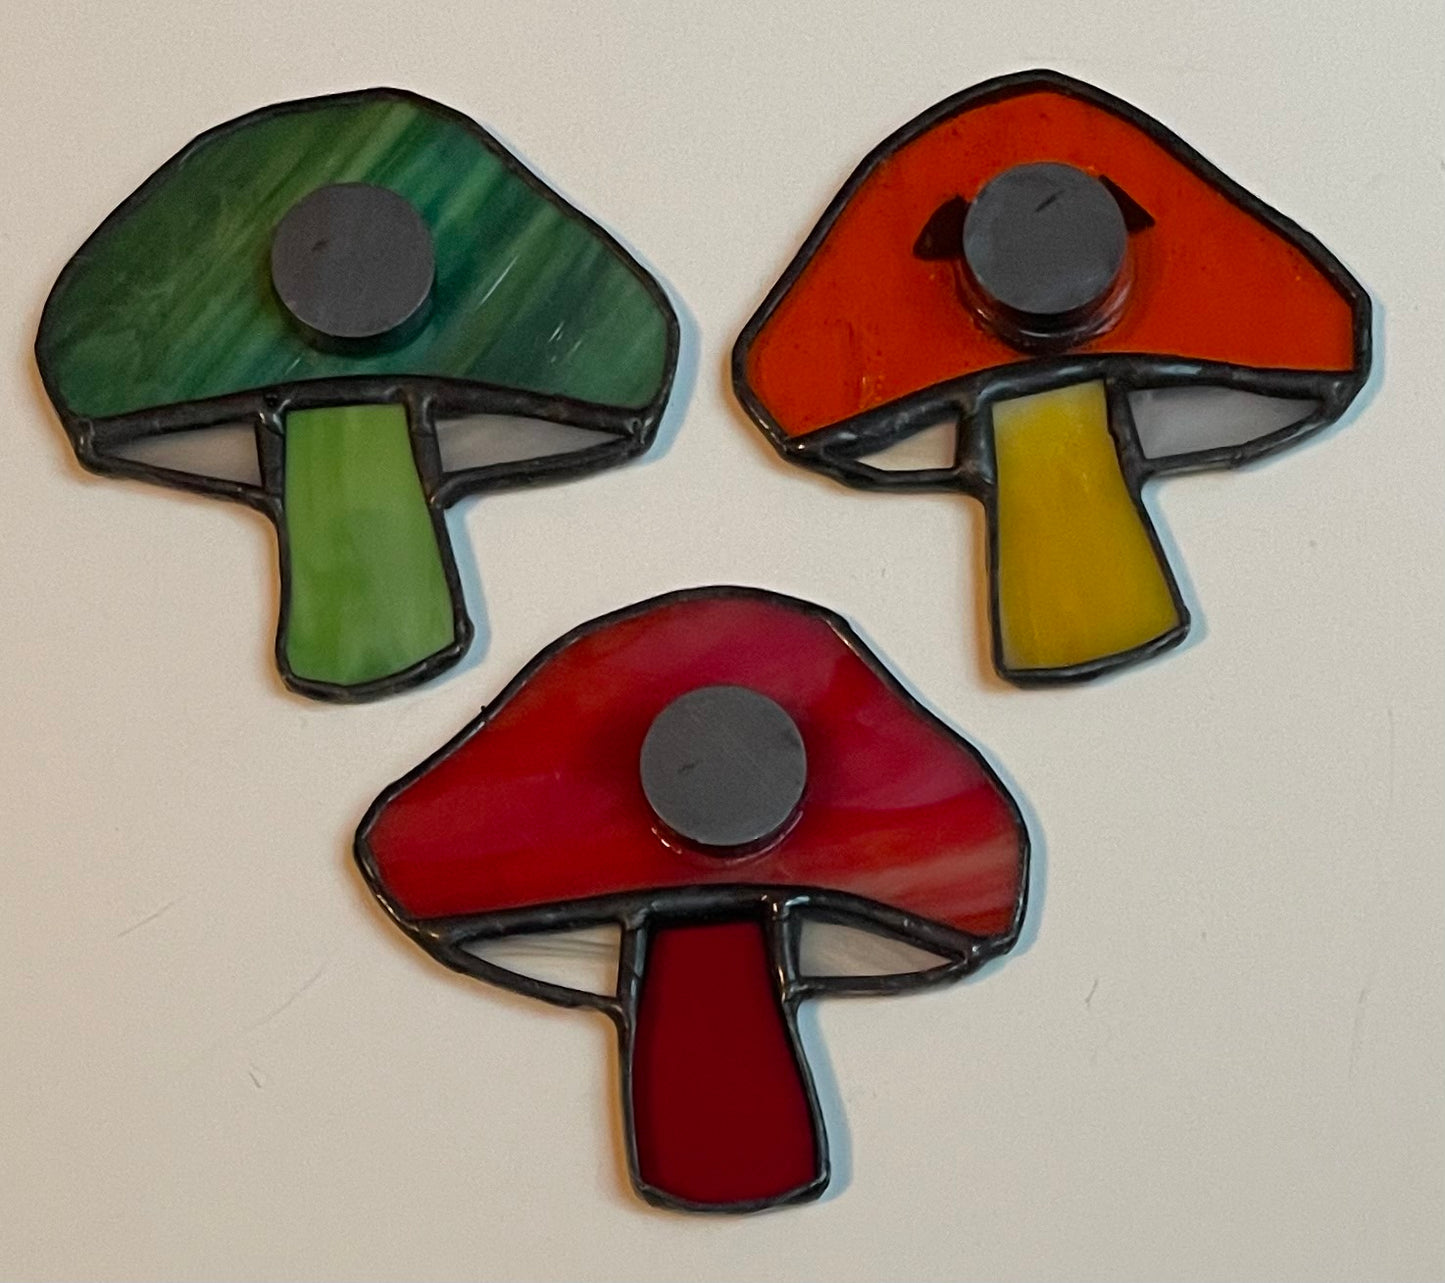 Cool Fridge Magnet - Spooky Shroom - Mushroom